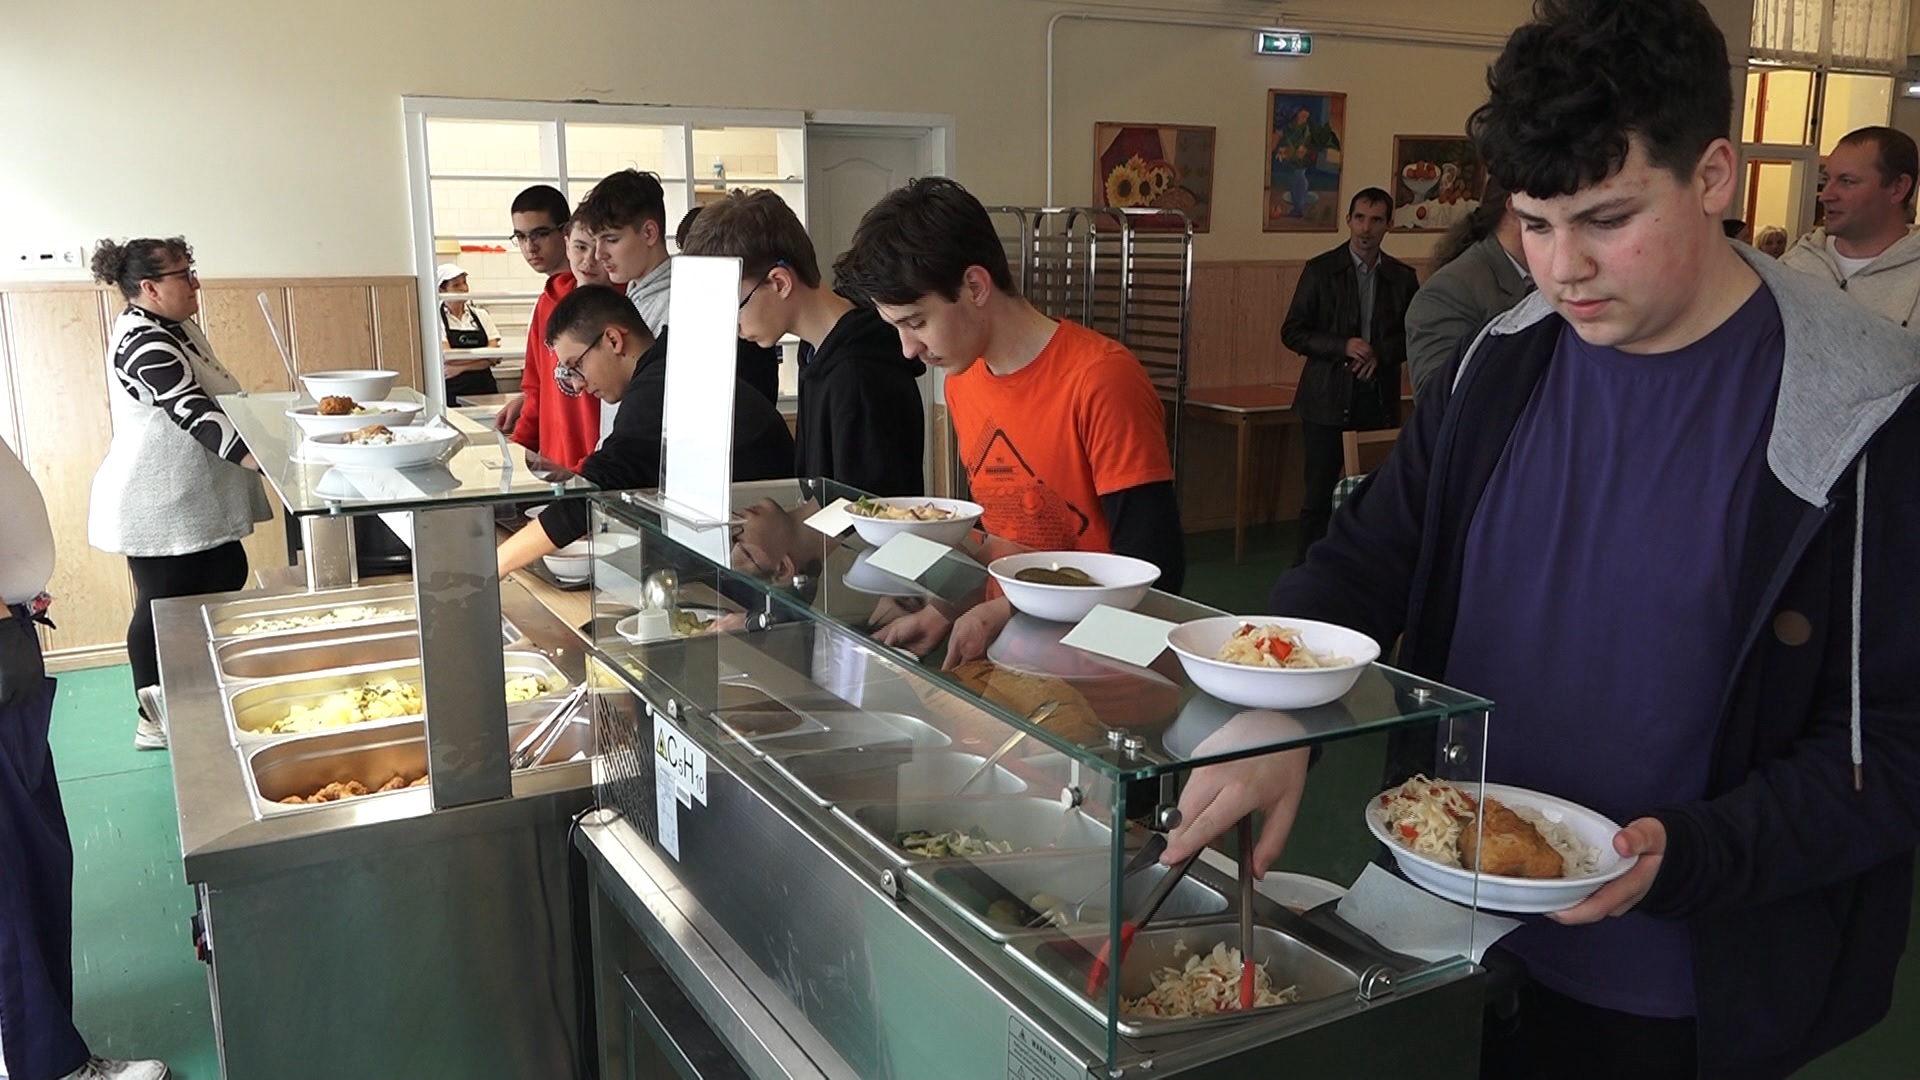 Szolnokon már több általános iskolában is bevezették a svédasztalos étkeztetést + videó